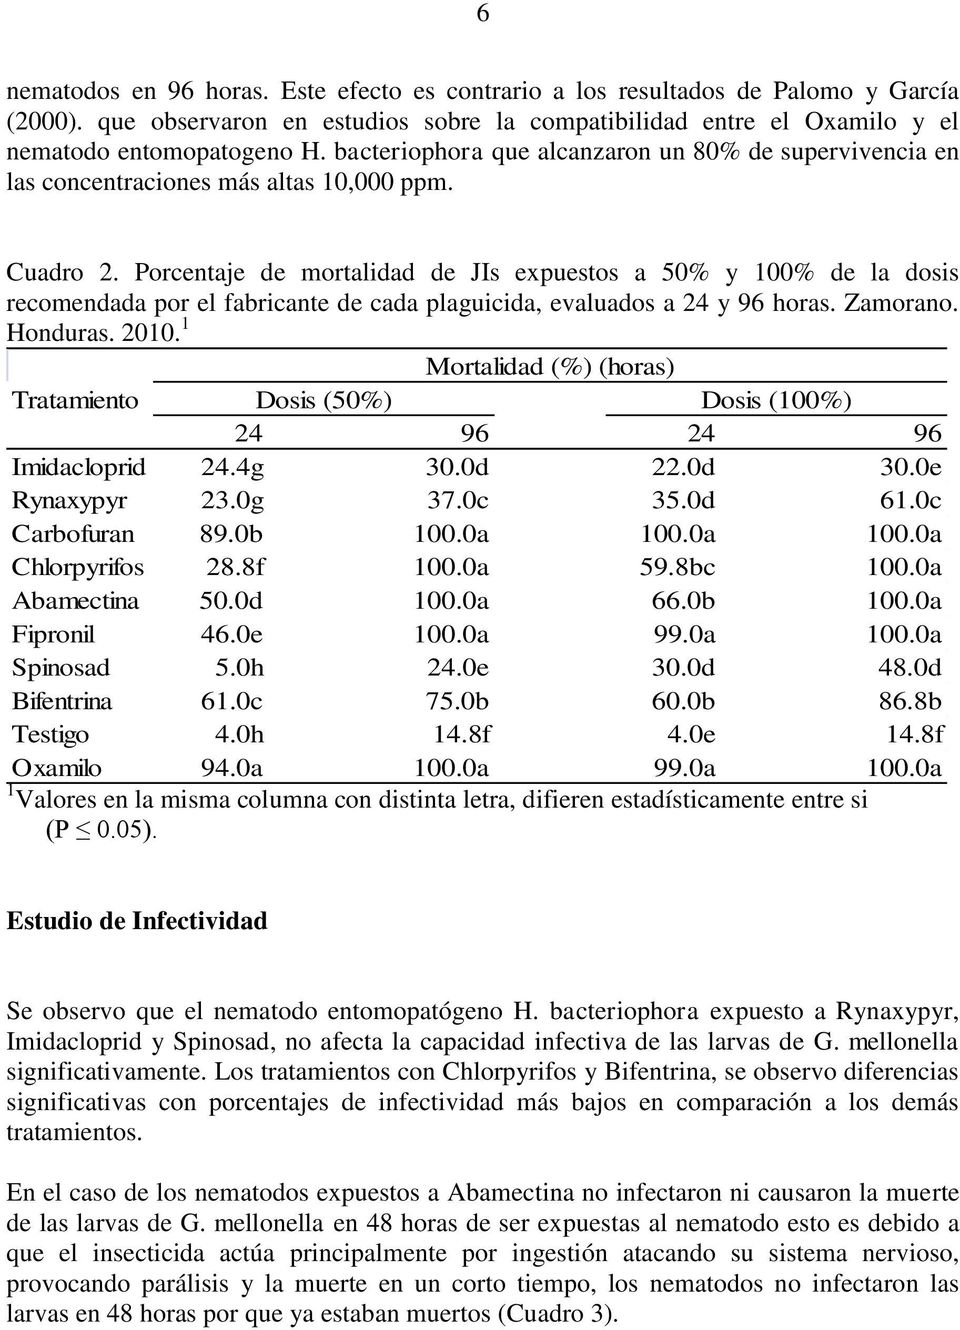 Porcentaje de mortalidad de JIs expuestos a 50% y 100% de la dosis recomendada por el fabricante de cada plaguicida, evaluados a 24 y 96 horas. Zamorano. Honduras. 2010.